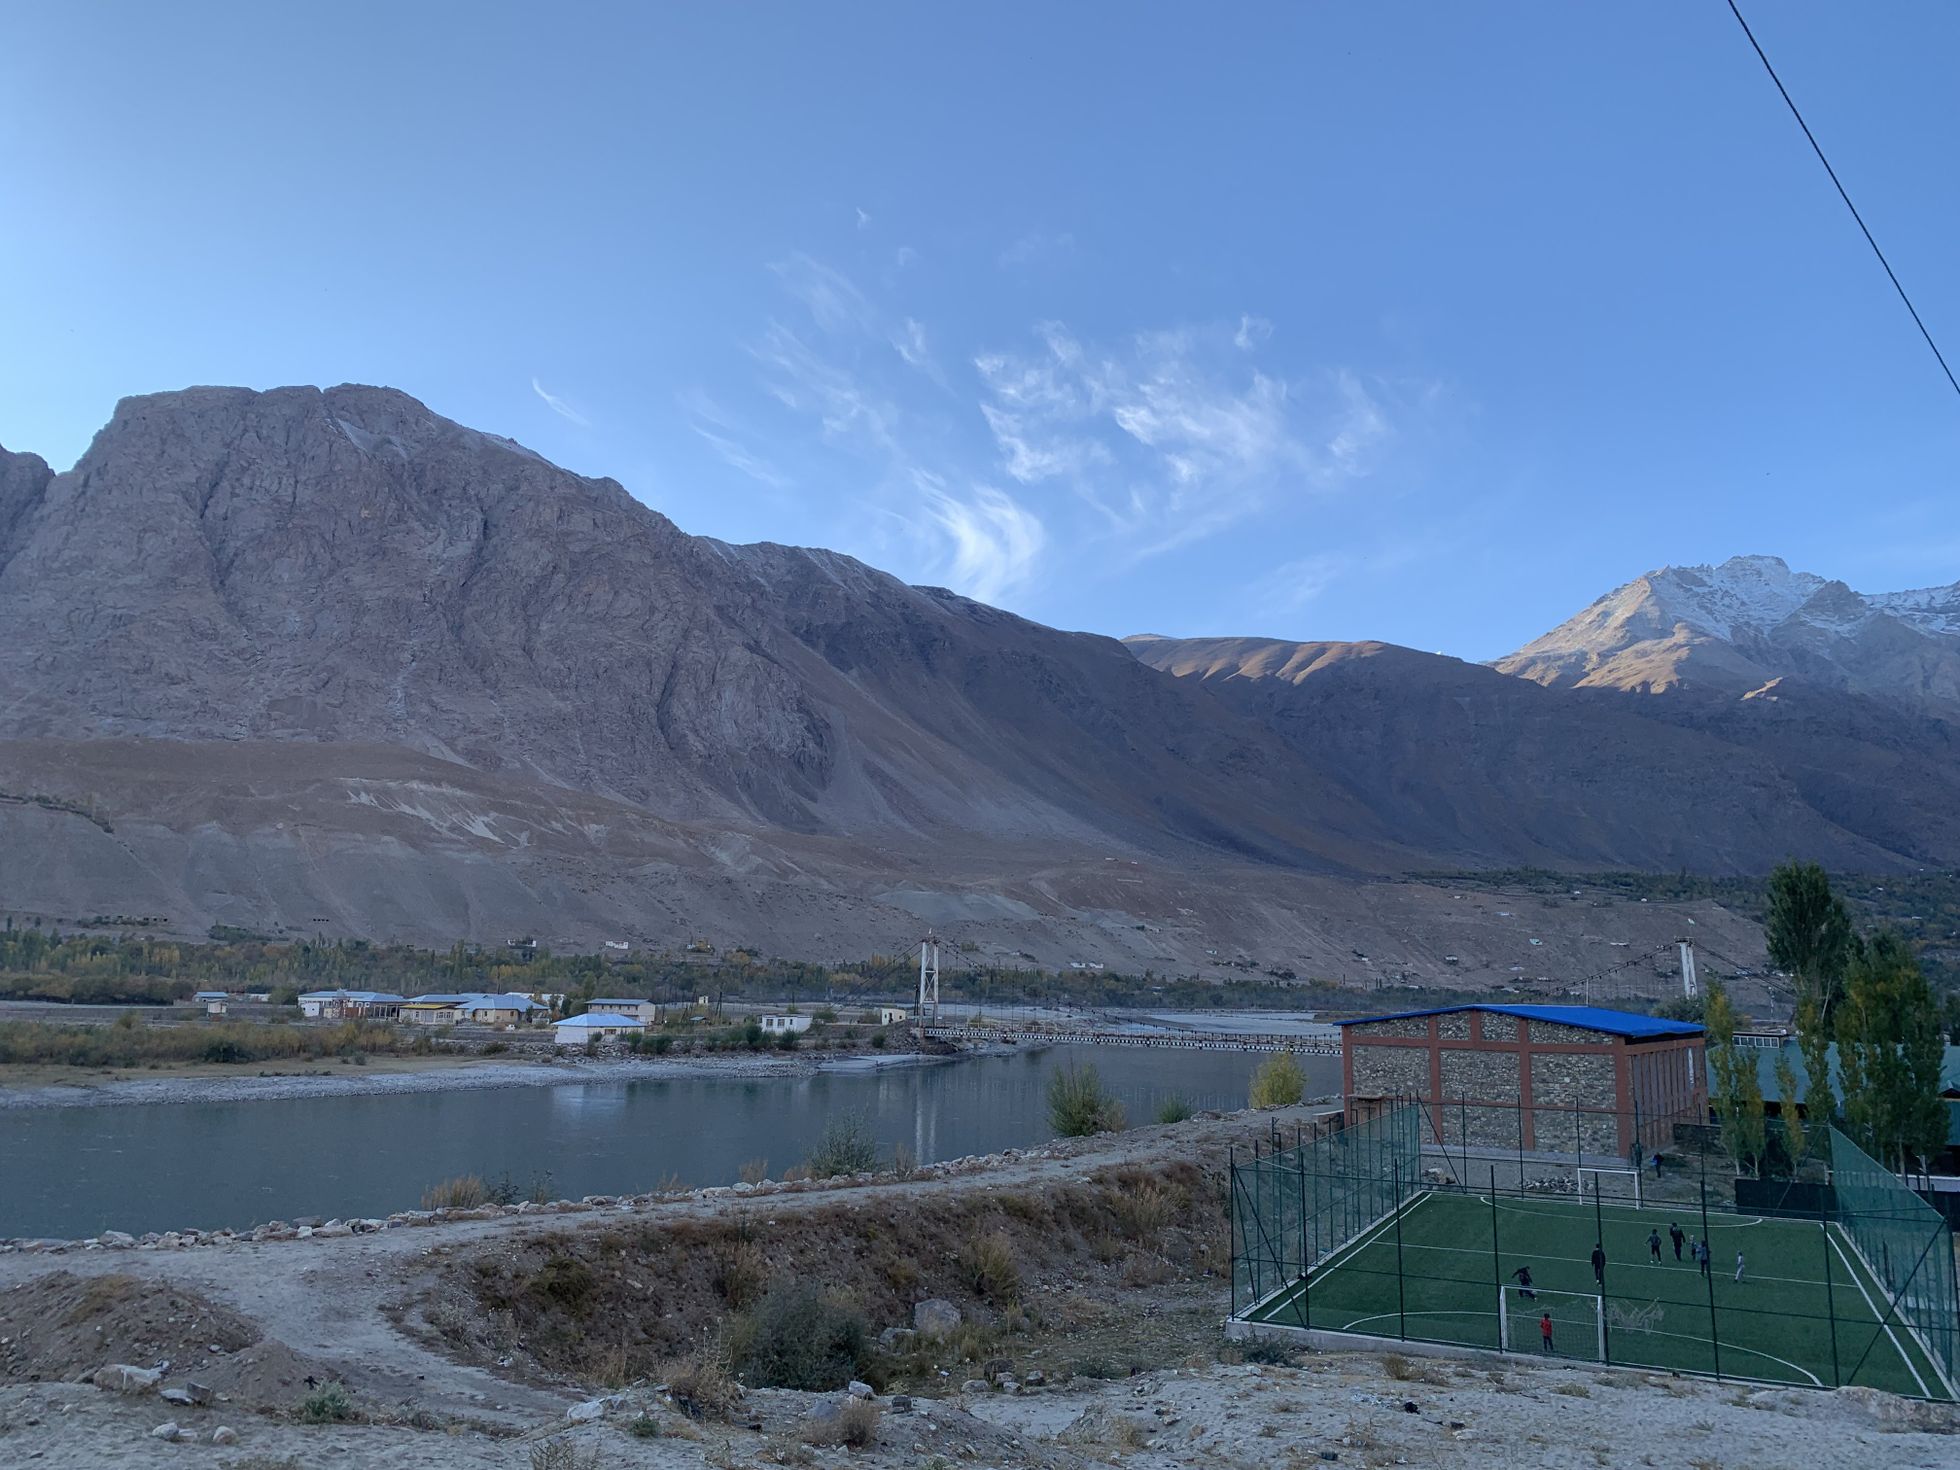 Panji jõgi Tadžikistani poolelt vaadatuna. Kauguses on näga Pamiri silda. Silma teritades võib näha ka, et Afganistani poolel on silla tippu heisatud valge Talibani lipp.